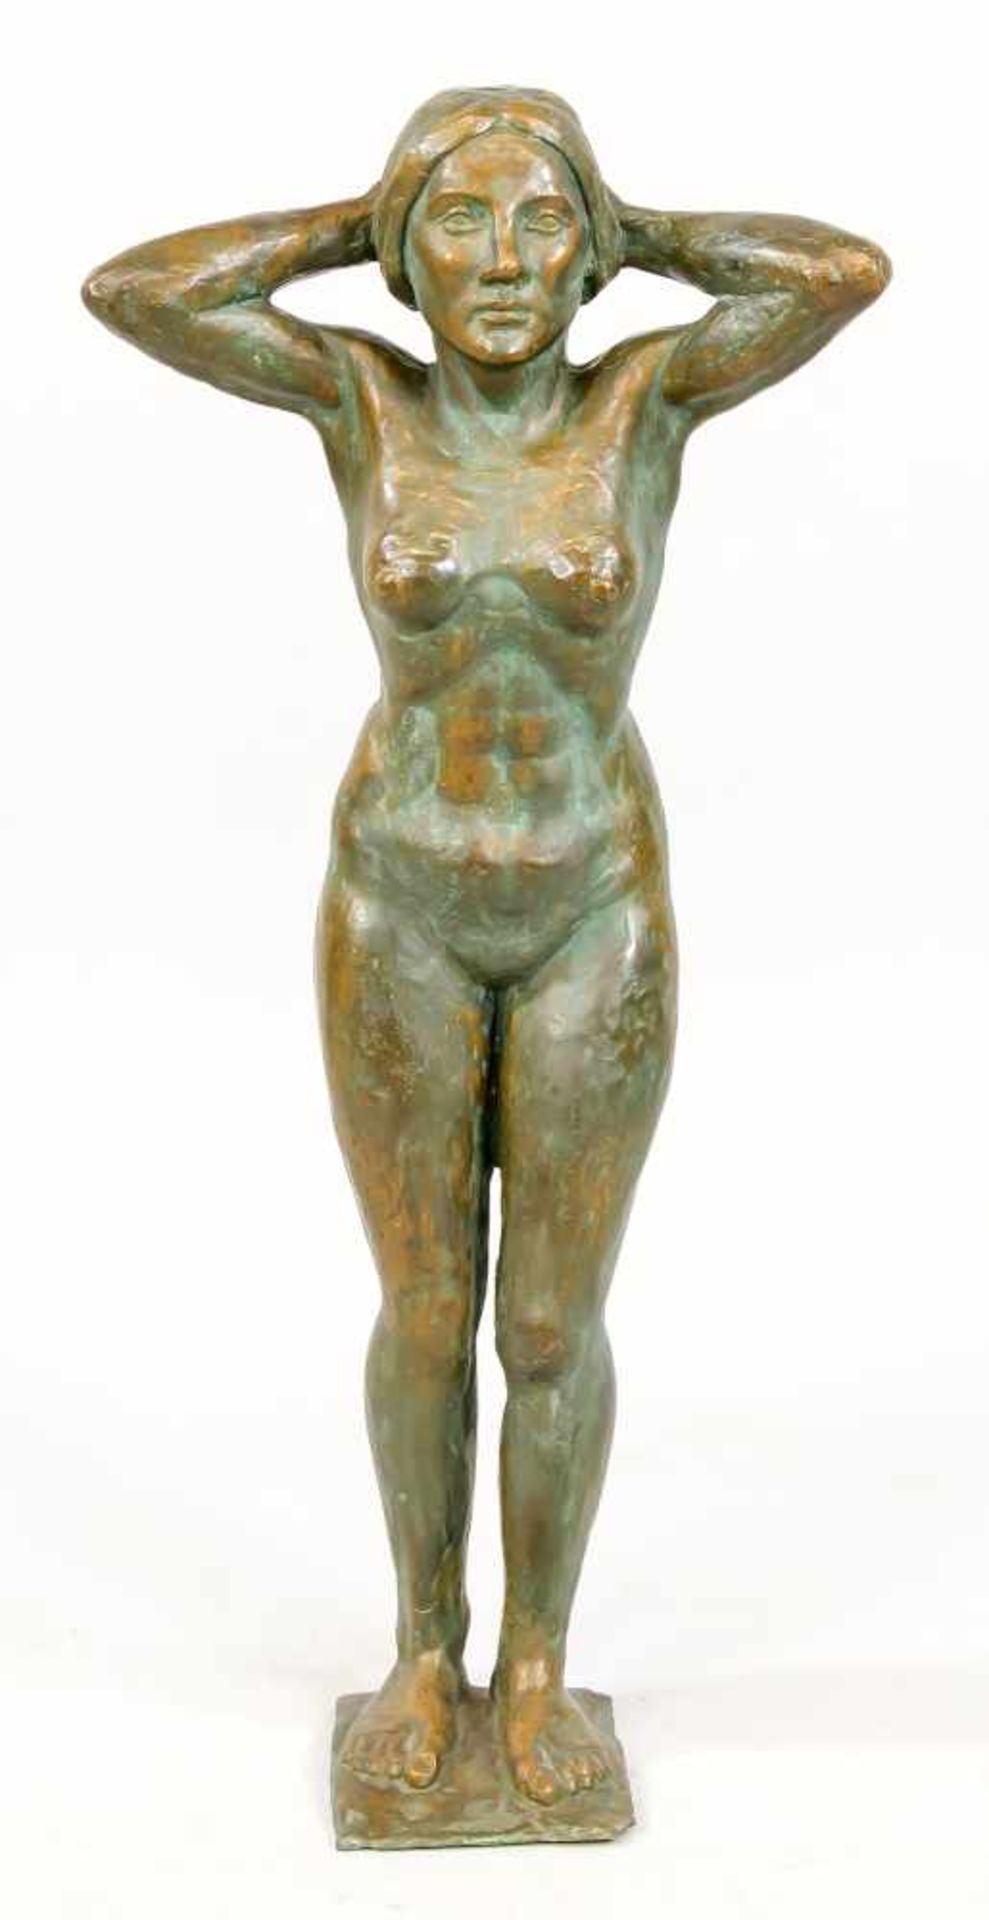 Severo Vescovi (1904-2000), Italienischer Bildhauer, stehender weiblicher Akt, grün-braun